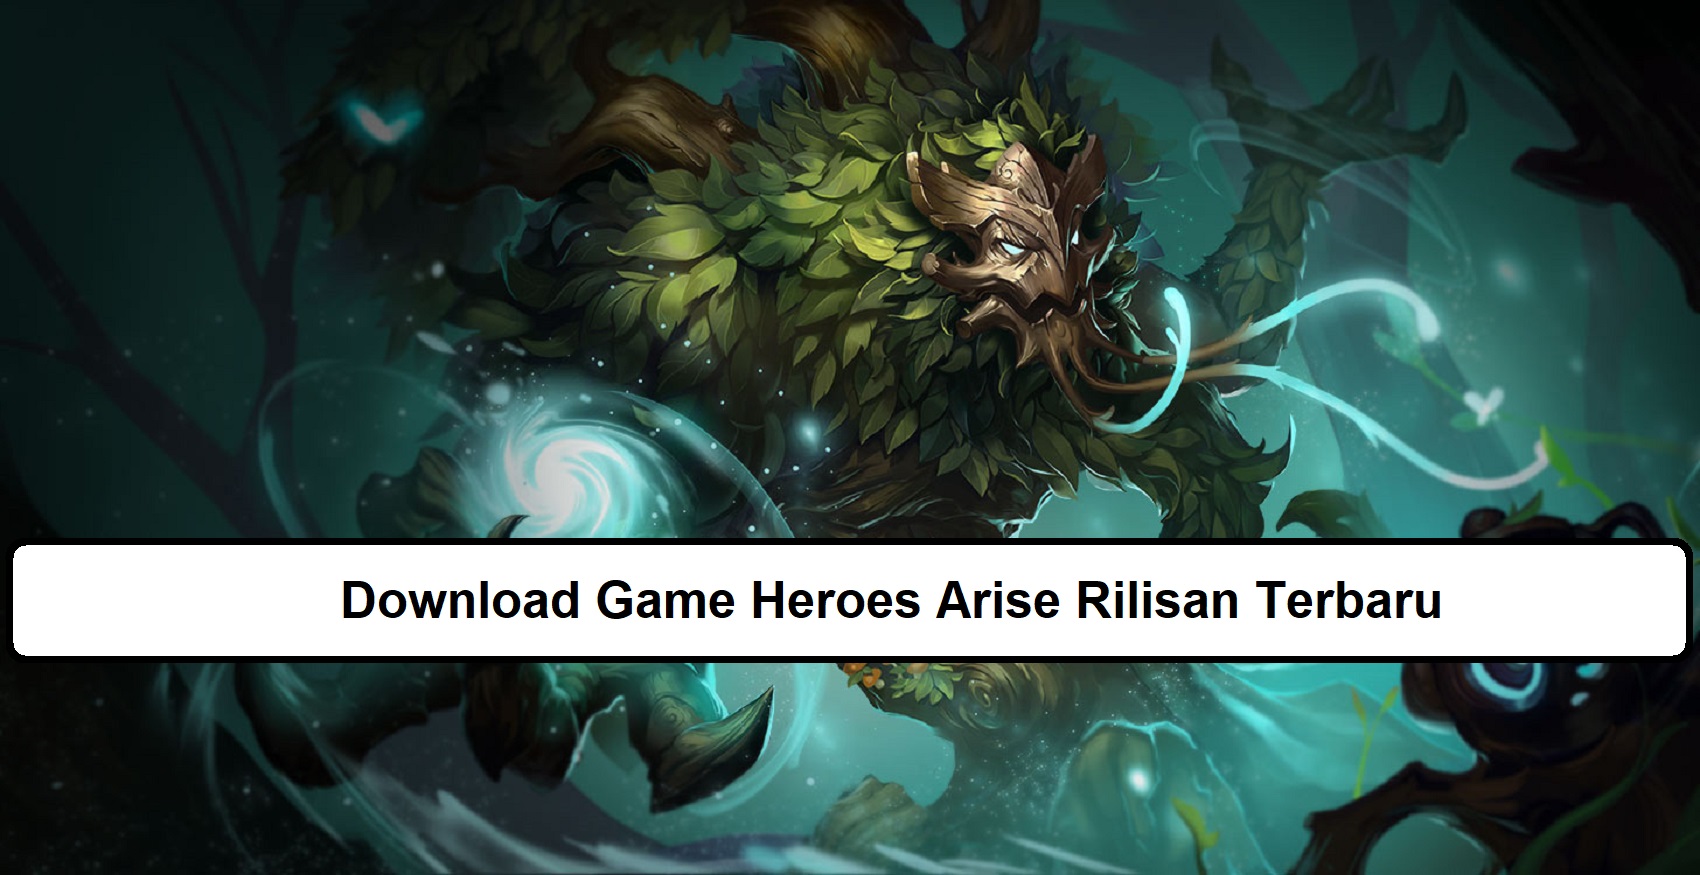 Download Game Heroes Arise Rilisan Terbaru